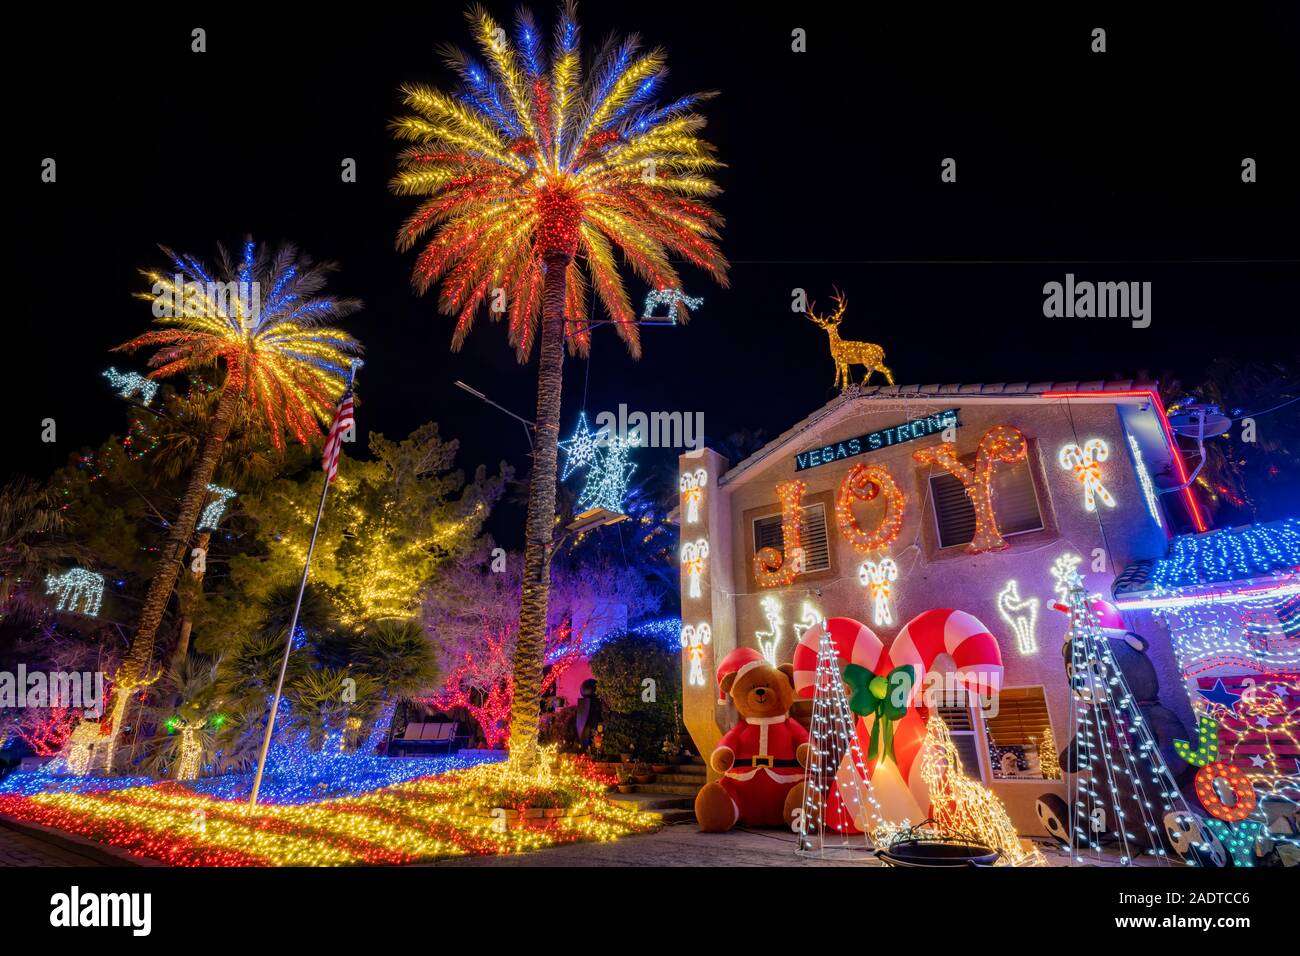 Les lumières de Noël, la décoration d'une maison à Las Vegas, Nevada Banque D'Images